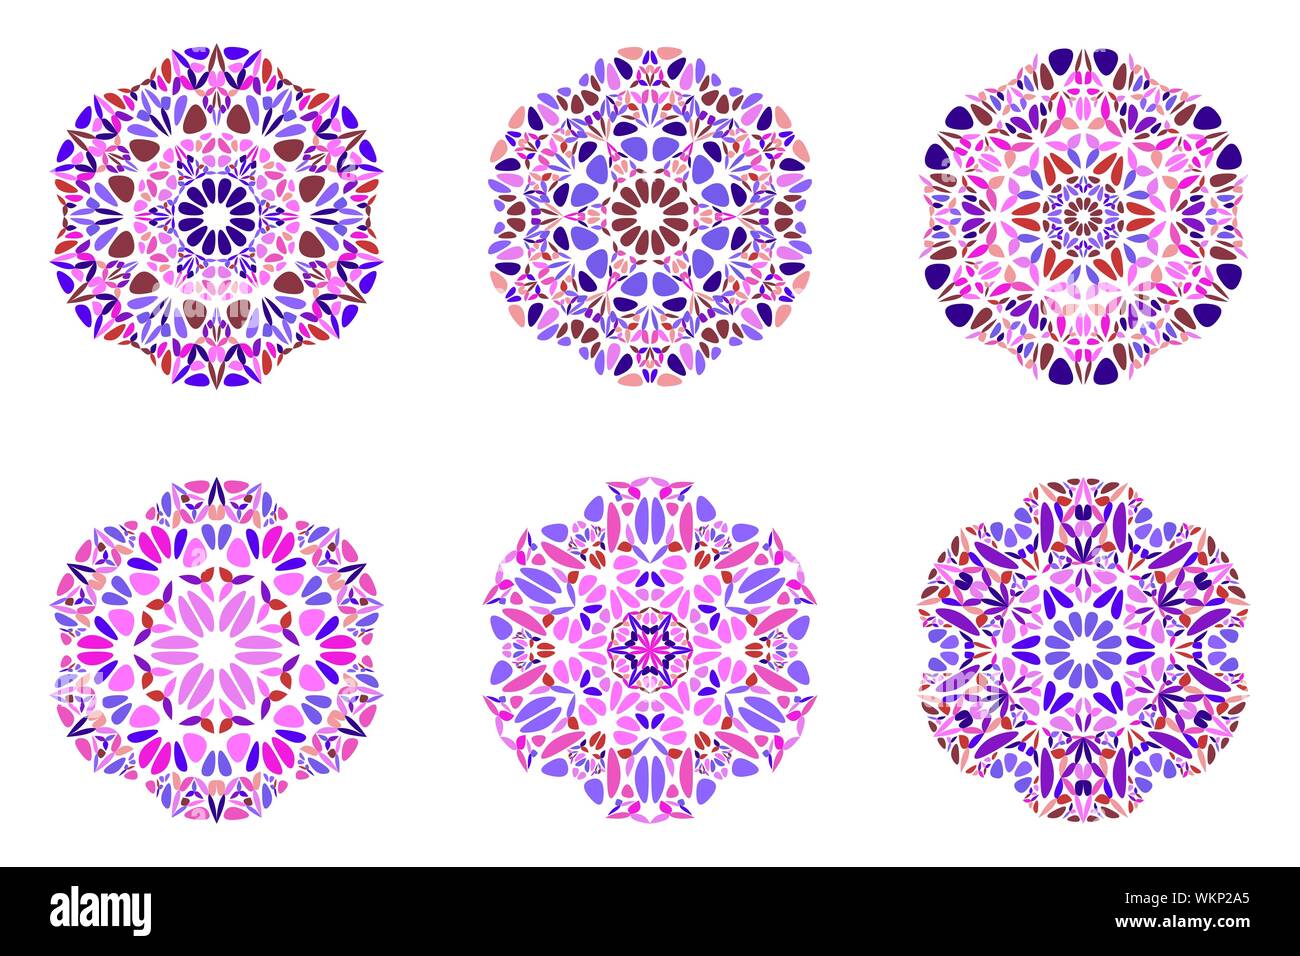 Bunte runde floralen Ornament mandala Symbol gesetzt - Dekorative Runde abstract vector Designs von geschwungenen Formen Stock Vektor